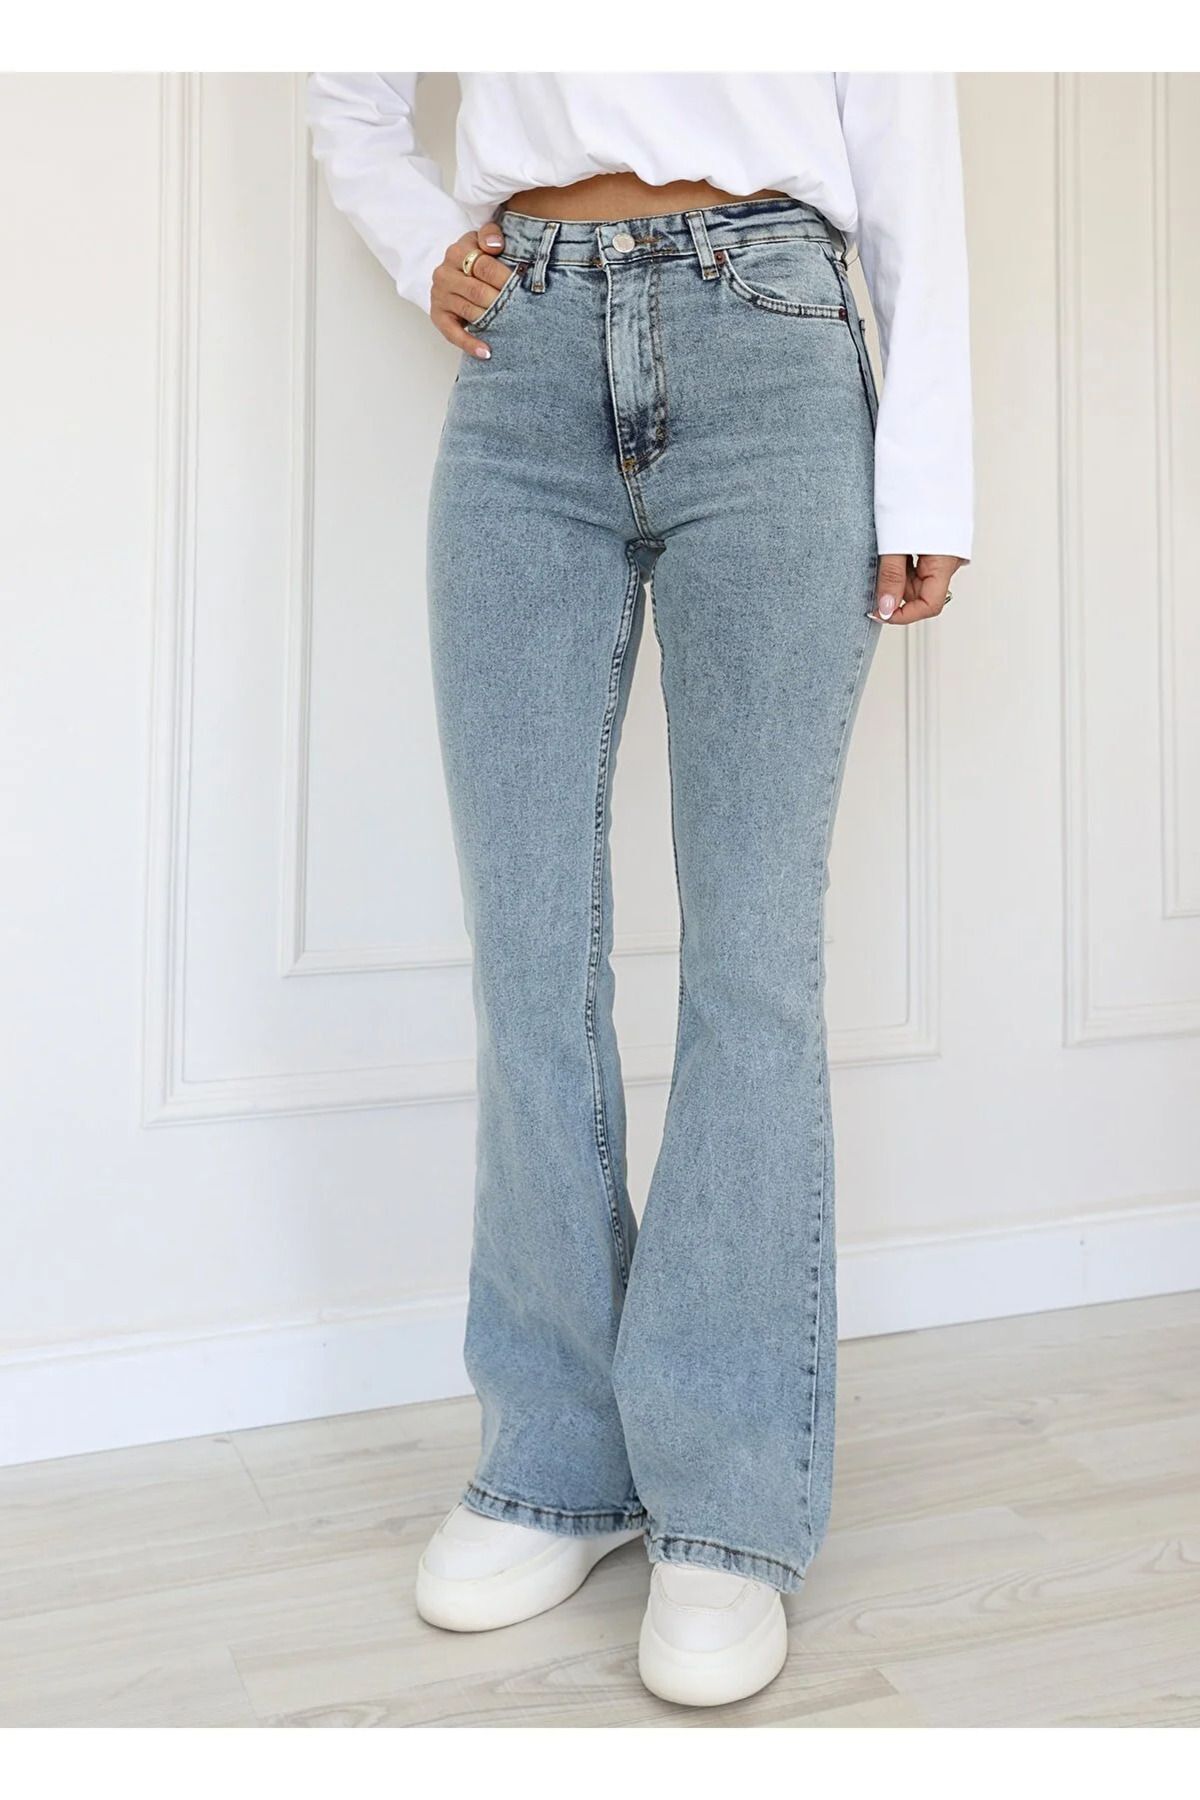 MAKRAS EXCLUSIVE Julia Jeans Kadın Mavi Kar Yıkama Yüksek Bel Comfort Likralı İspanyol Paça Kot Pantolon Jeans